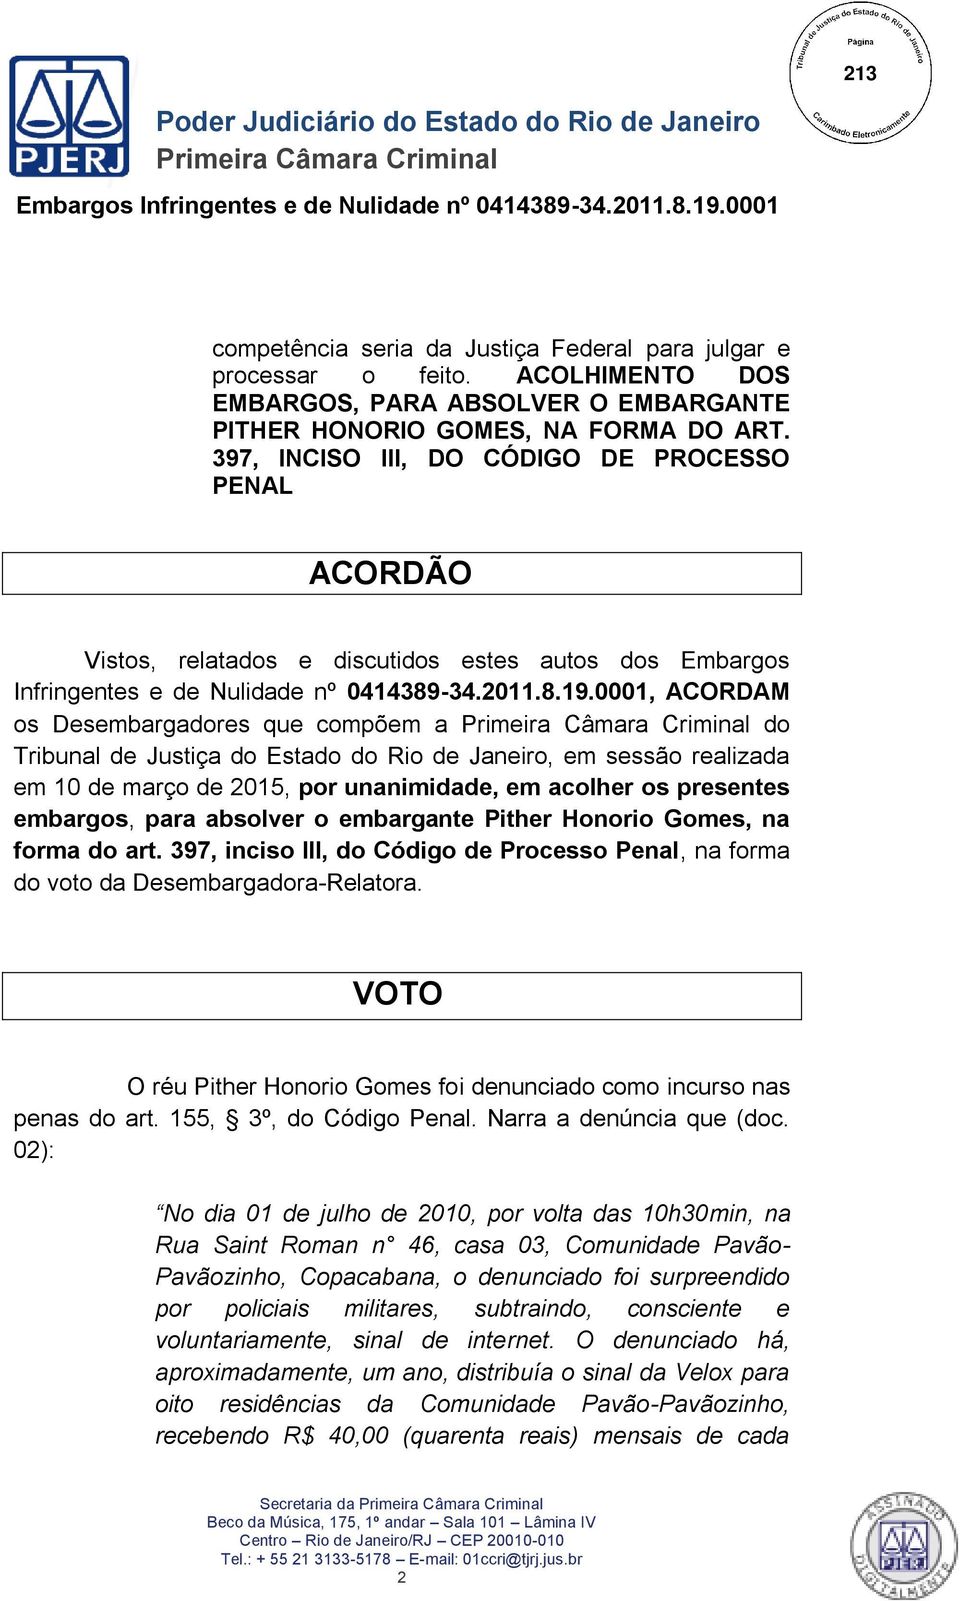 0001, ACORDAM os Desembargadores que compõem a do Tribunal de Justiça do Estado do Rio de Janeiro, em sessão realizada em 10 de março de 2015, por unanimidade, em acolher os presentes embargos, para